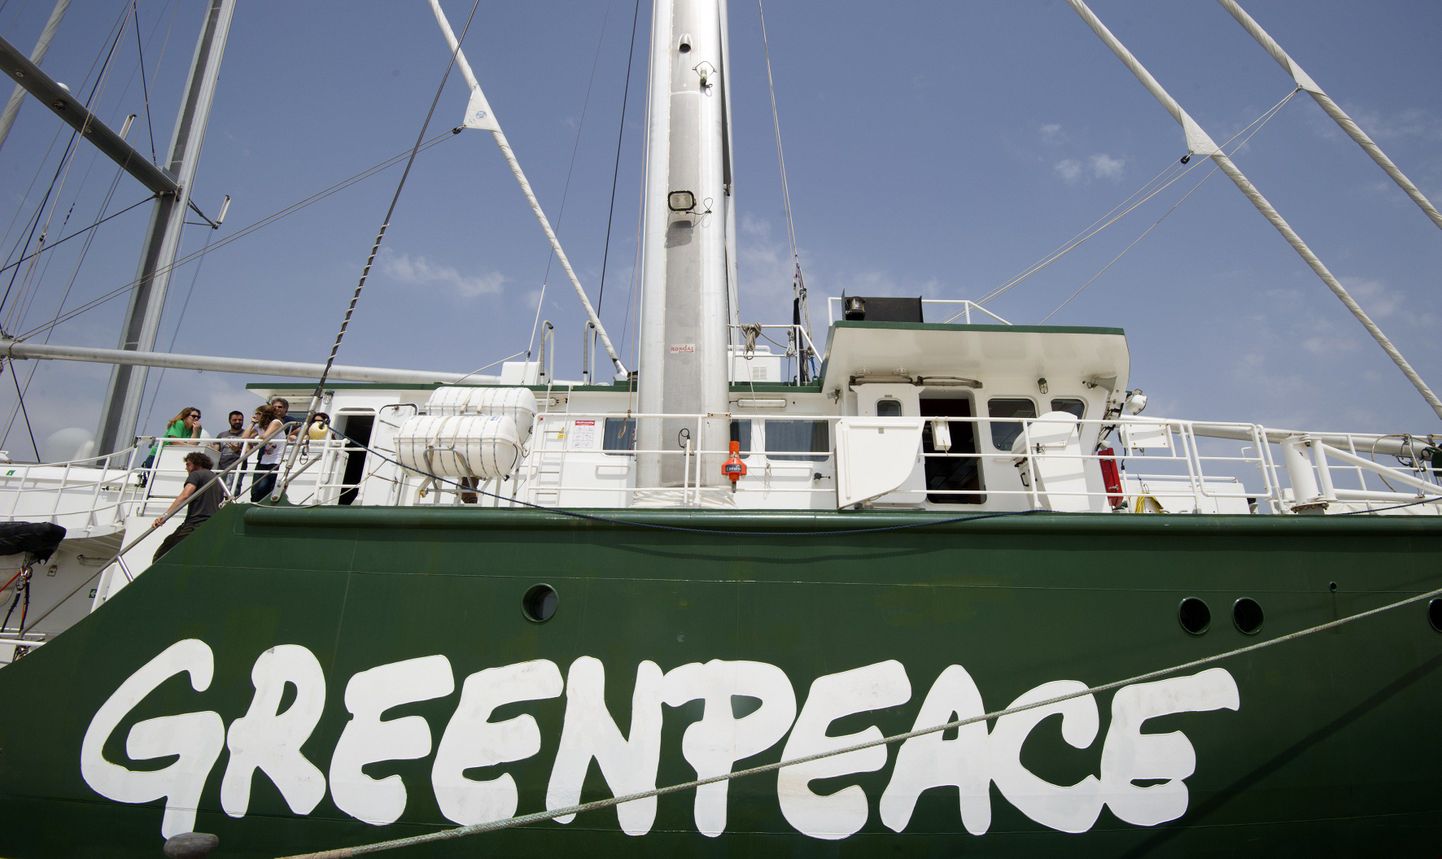 Активисты Greenpeace высмеяли заявление генерального секретаря НАТО Андерса Фог Расмуссена, который обвинил Россию в том, что она ведет подрывную деятельность против добычи сланцевого газа в Европе.